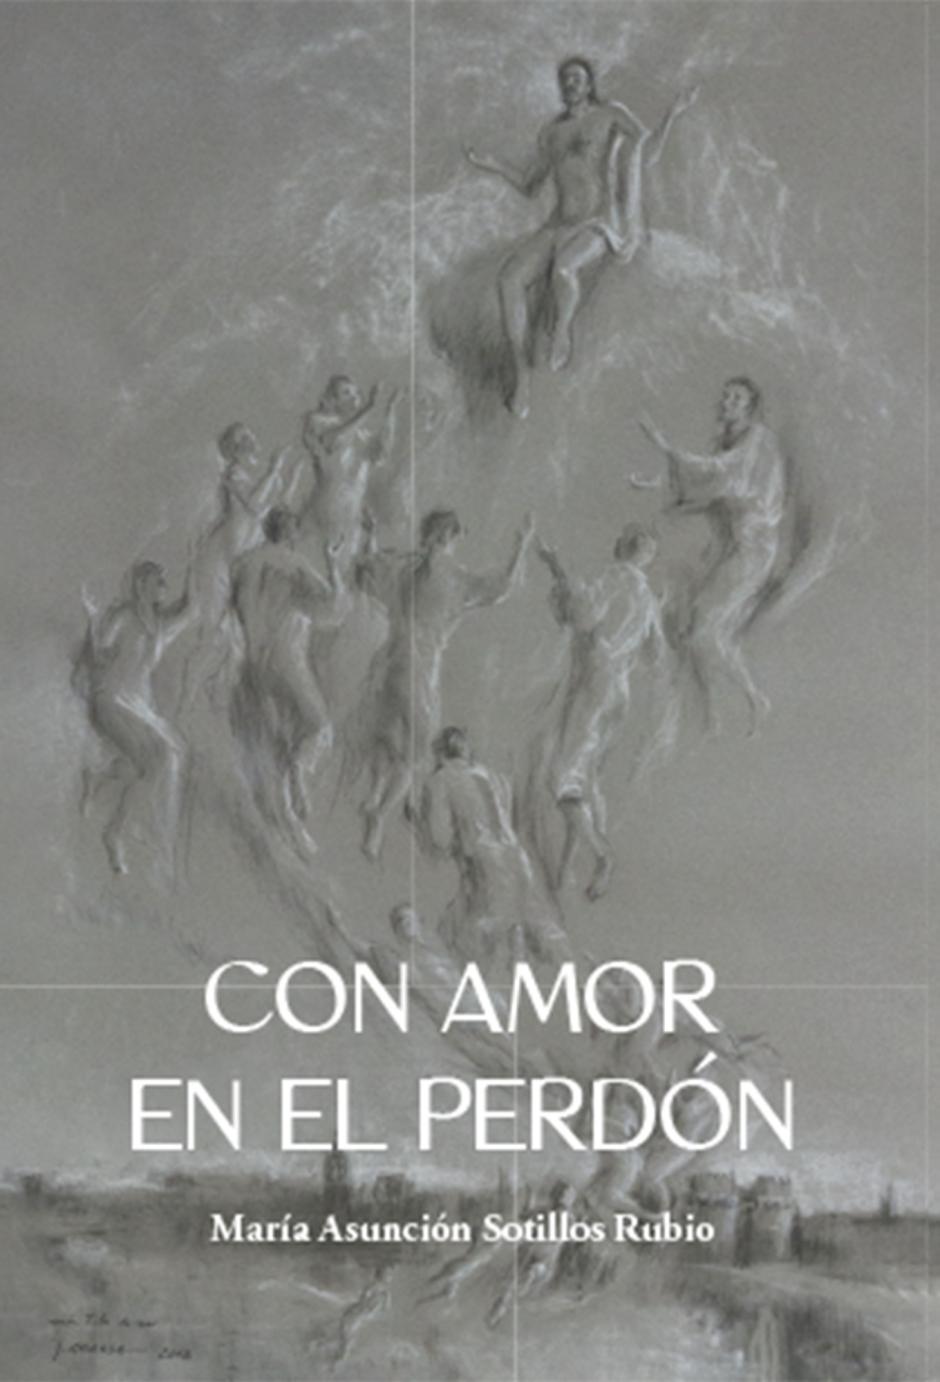 'Con amor en el perdón', el libro de María Asunción Sotillos